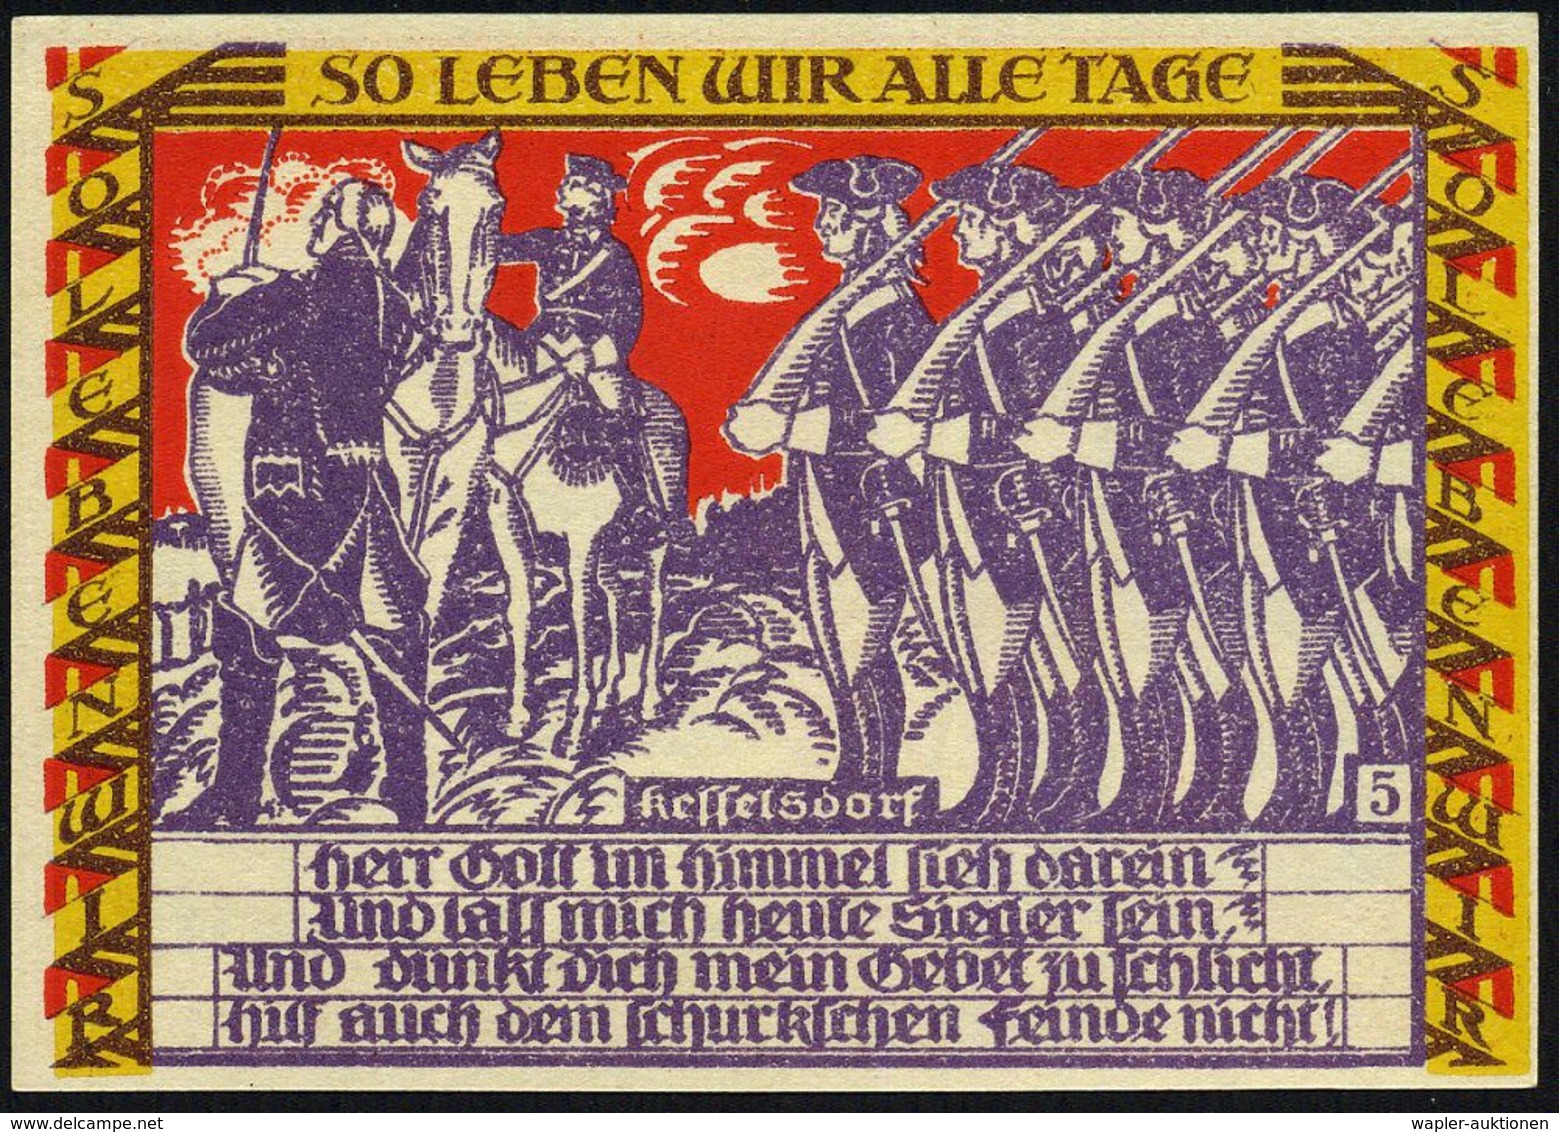 Dessau 1921 50 Pf. Infla-Notgeldscheine, Serie von 6 verschied. Motiven des friederizianischen Soldatenlebens (vs. der "